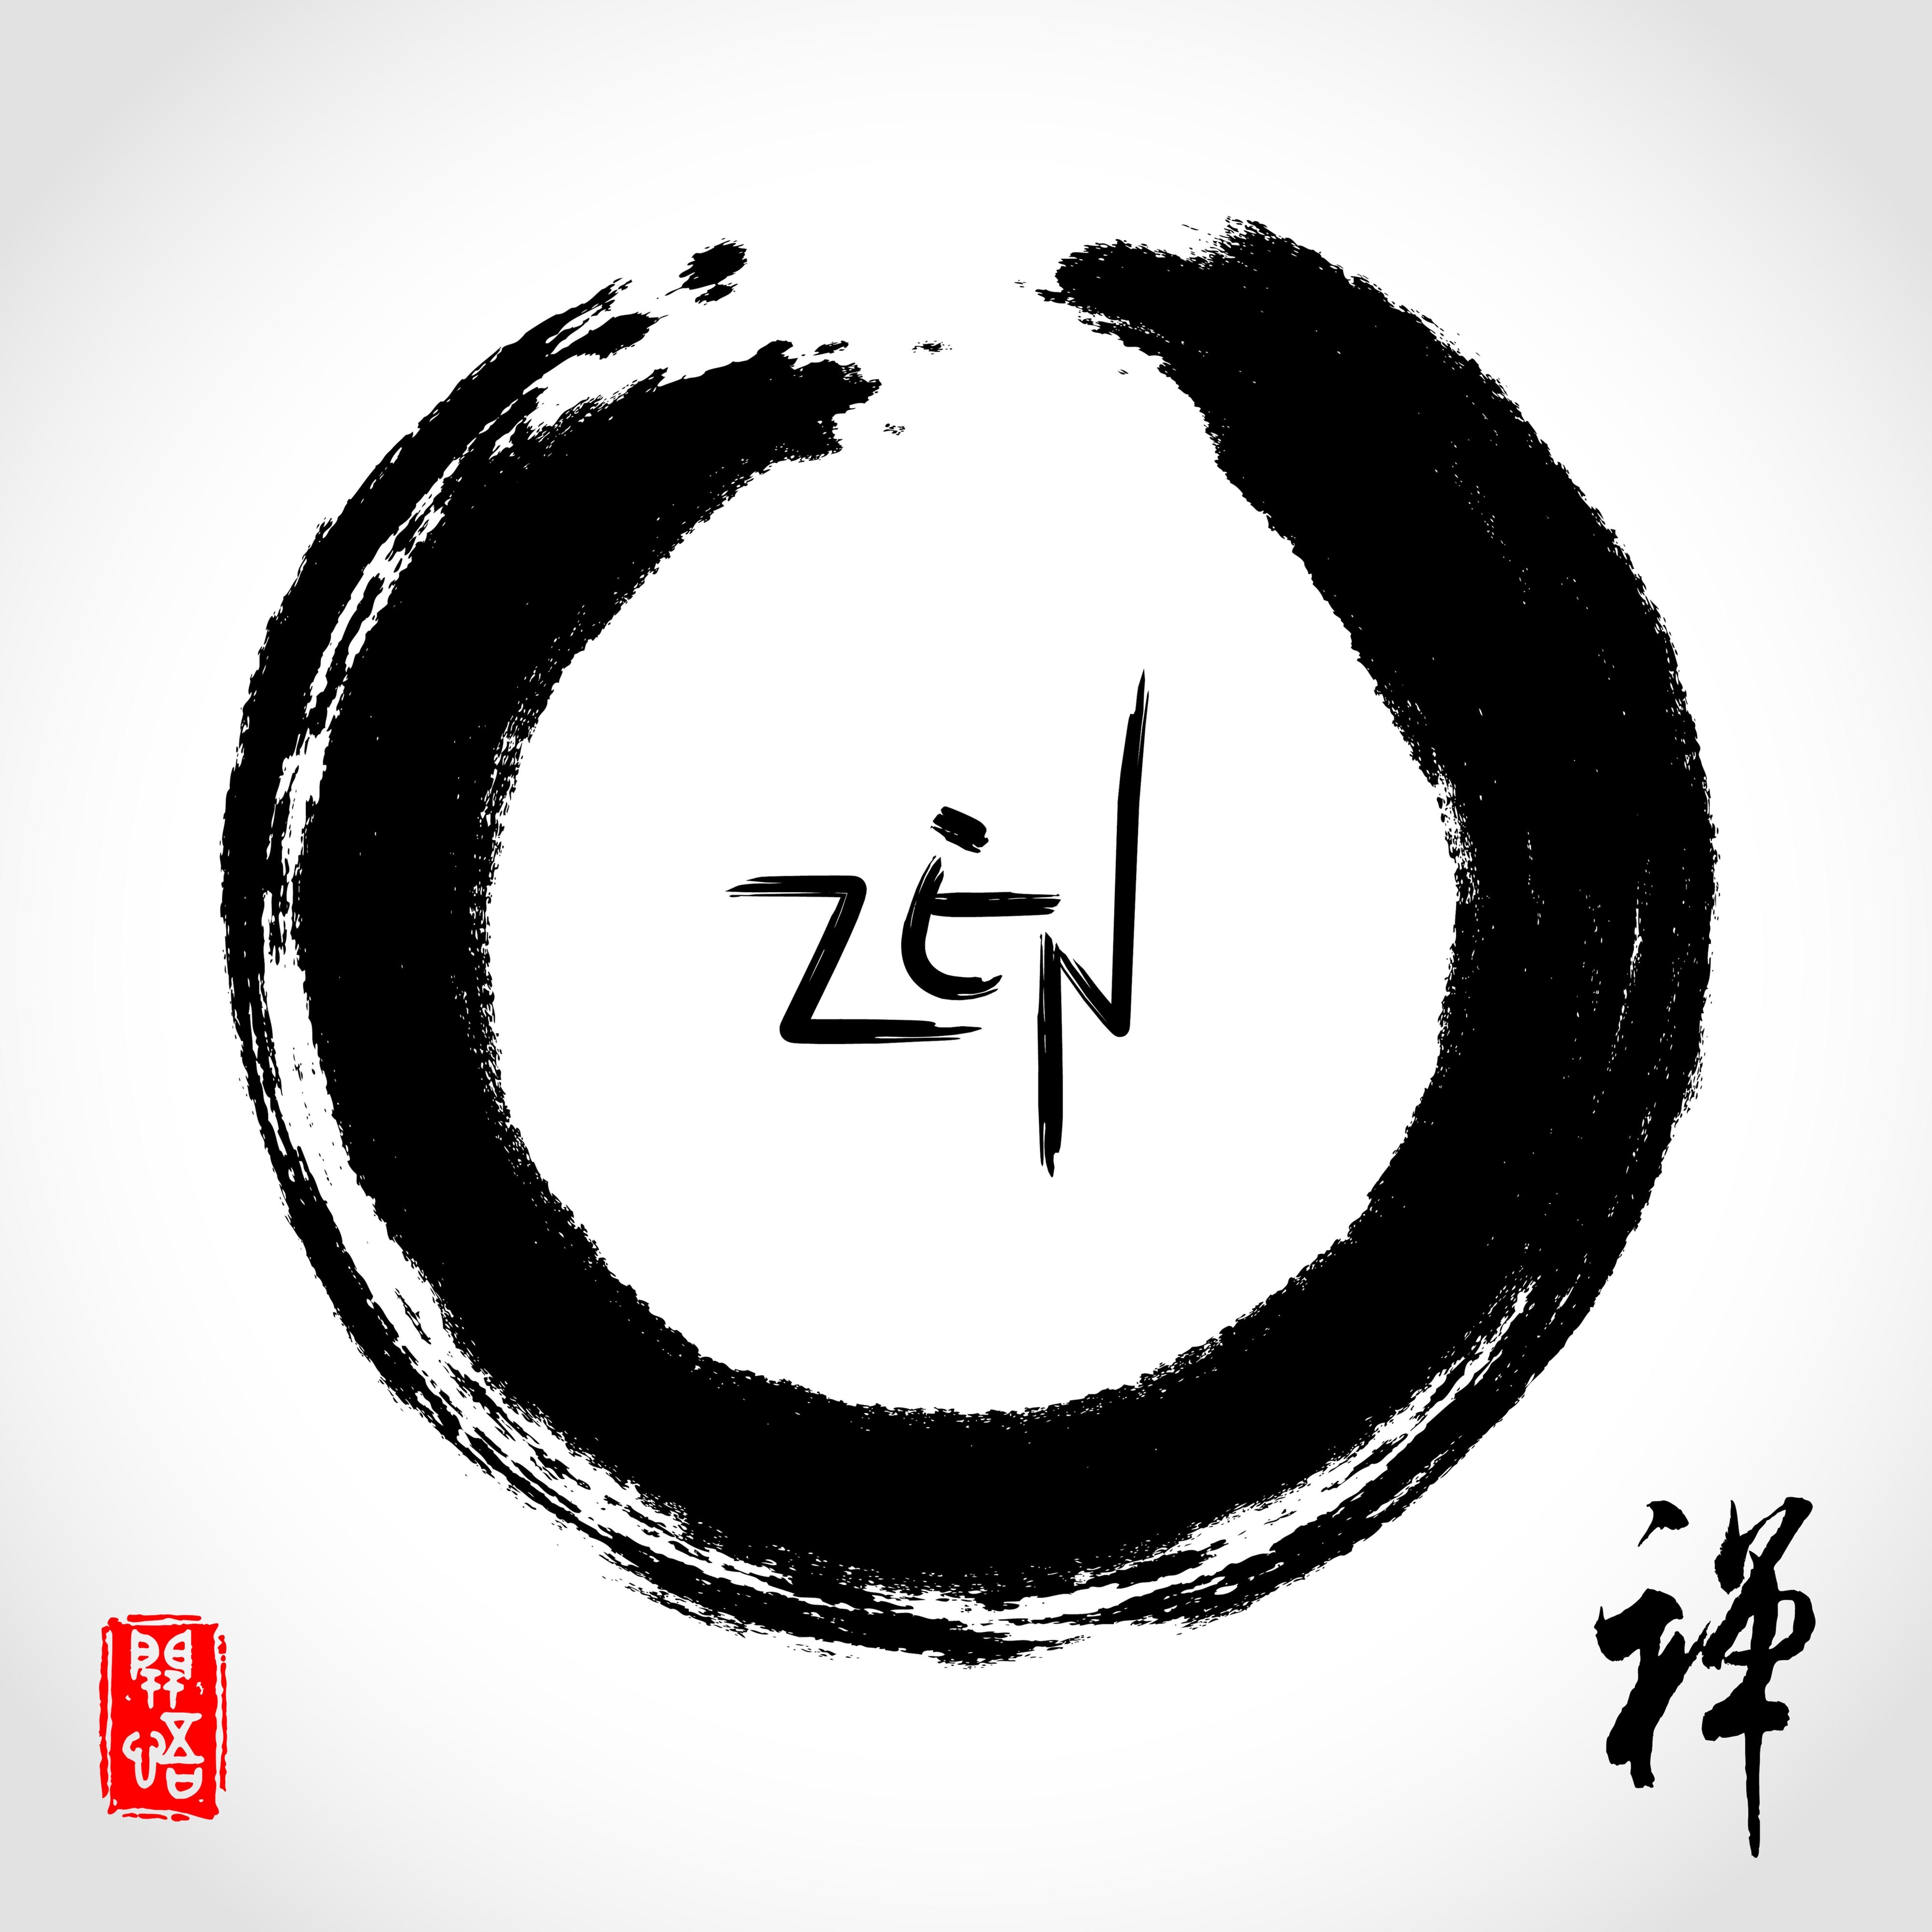 Musica para Meditacion Zen - Sonidos New Age